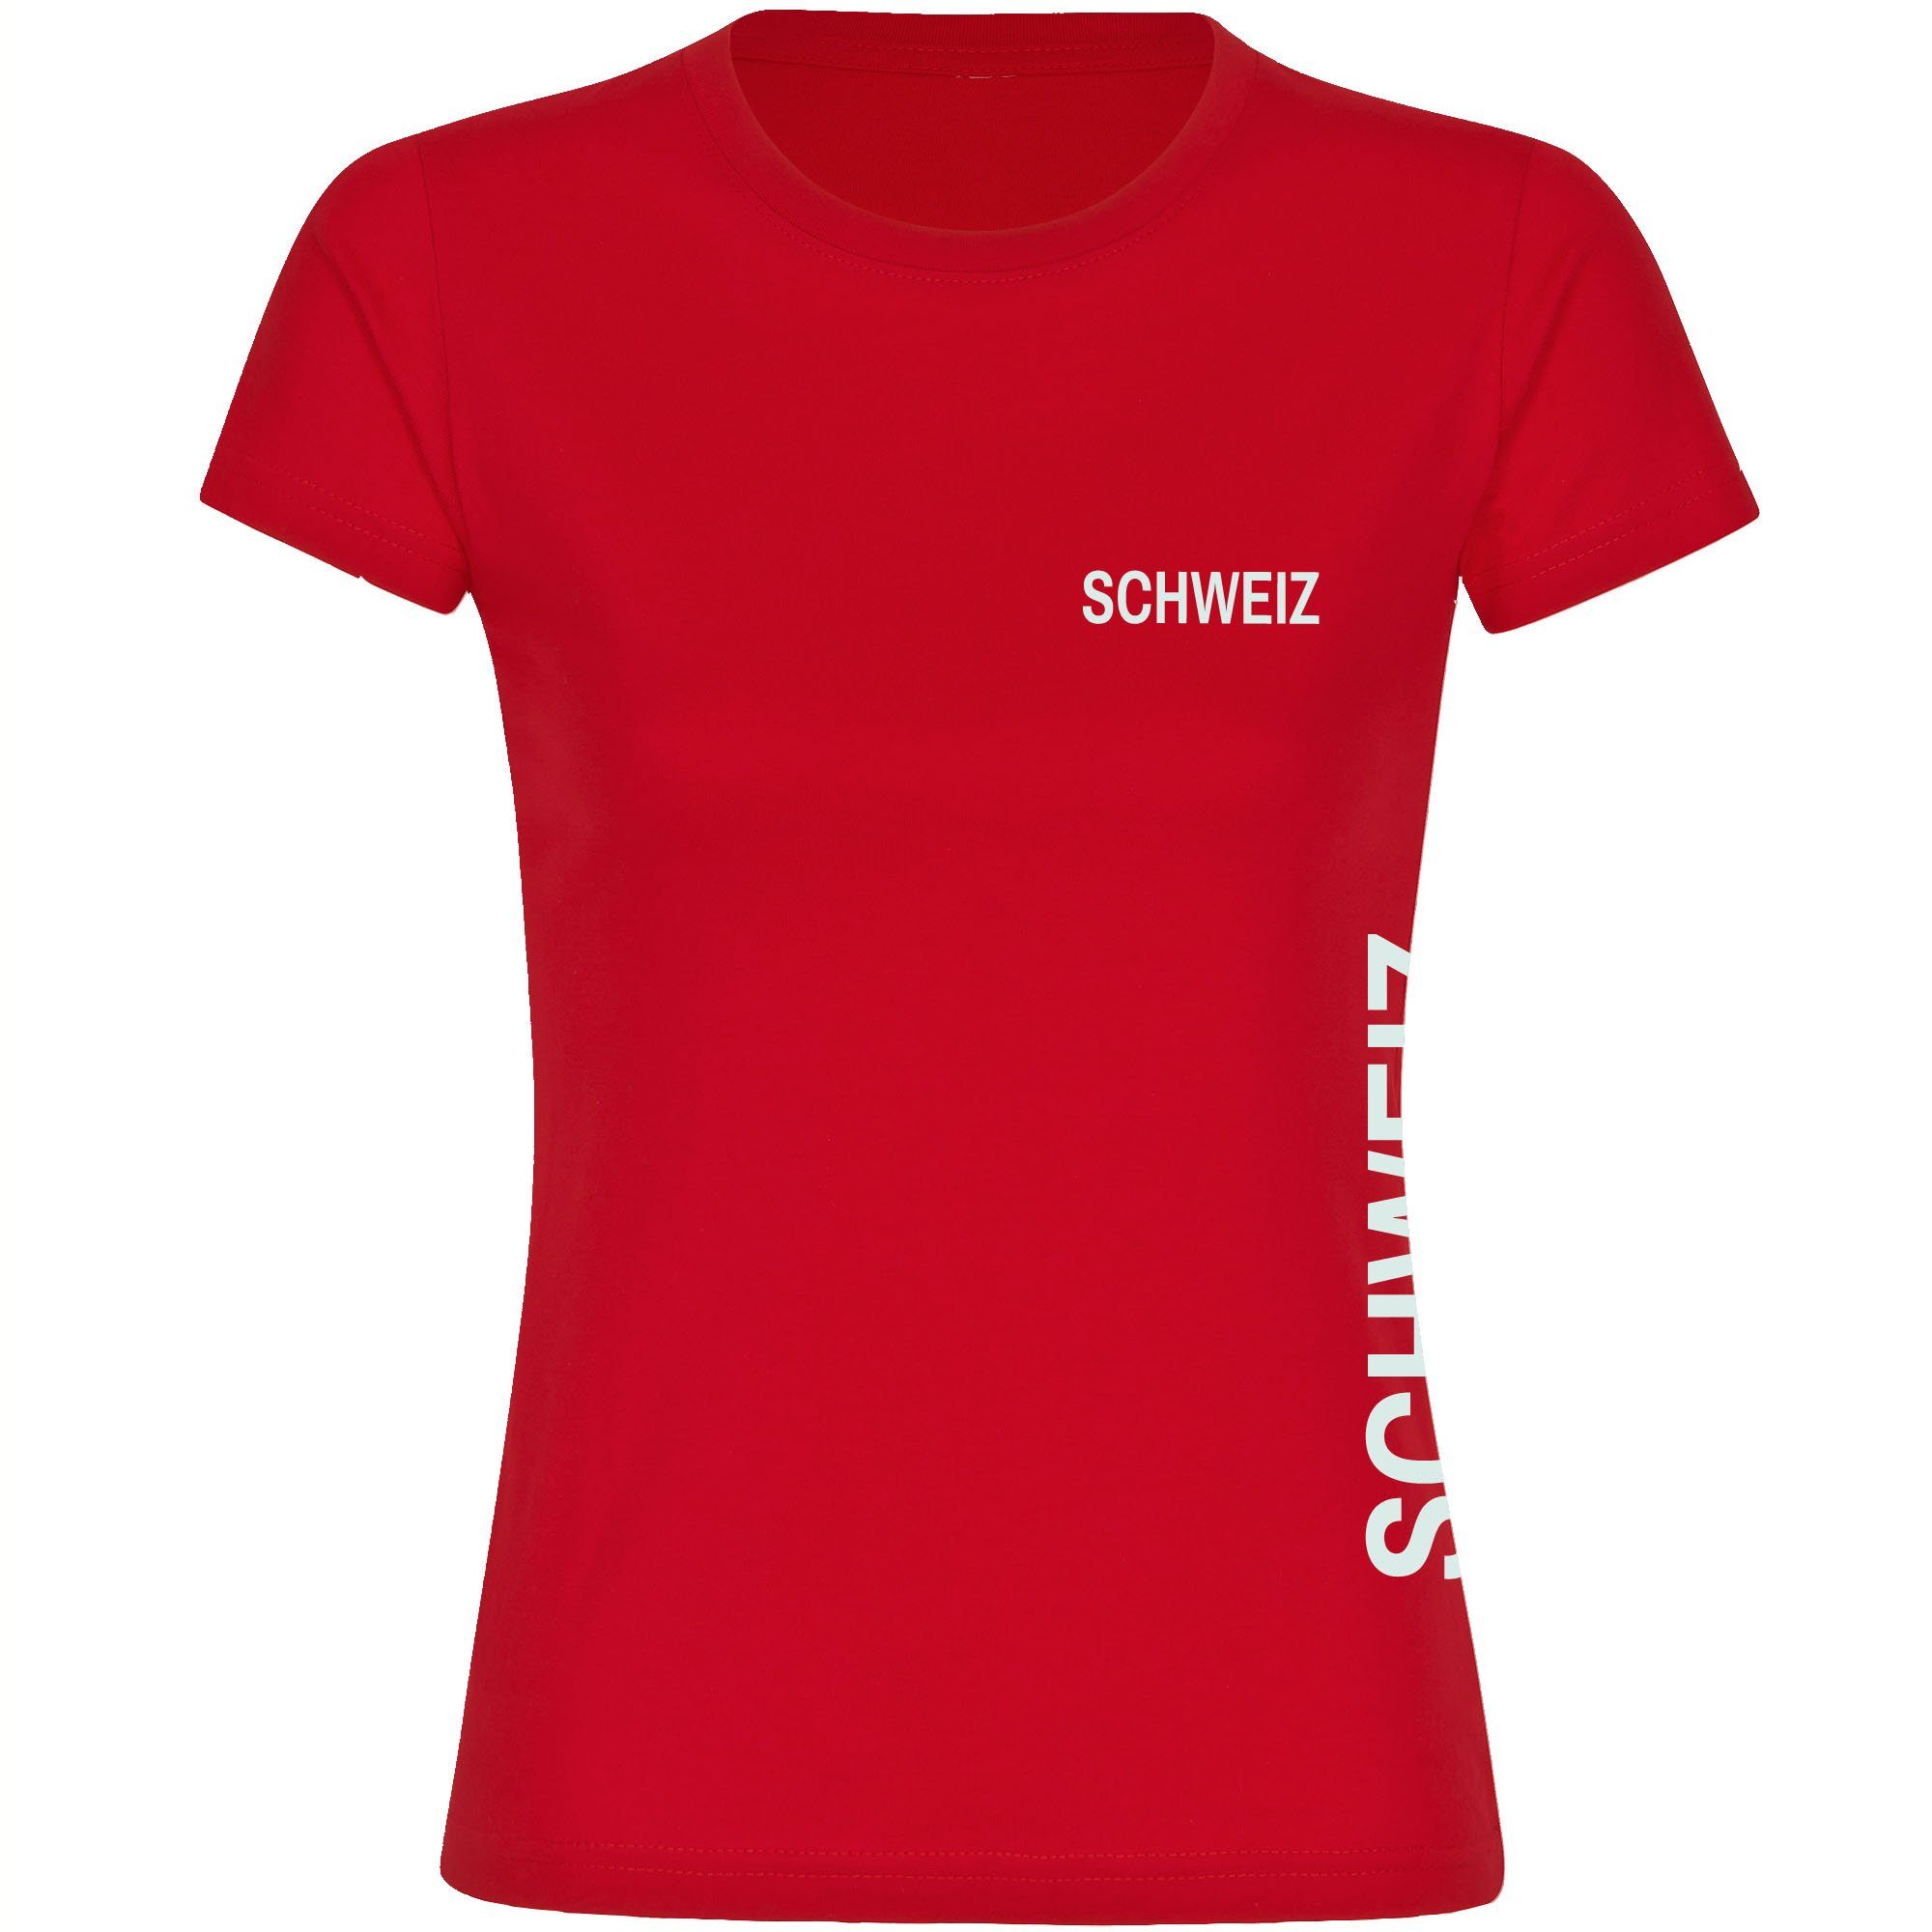 multifanshop T-Shirt Damen Schweiz - Brust & Seite - Frauen